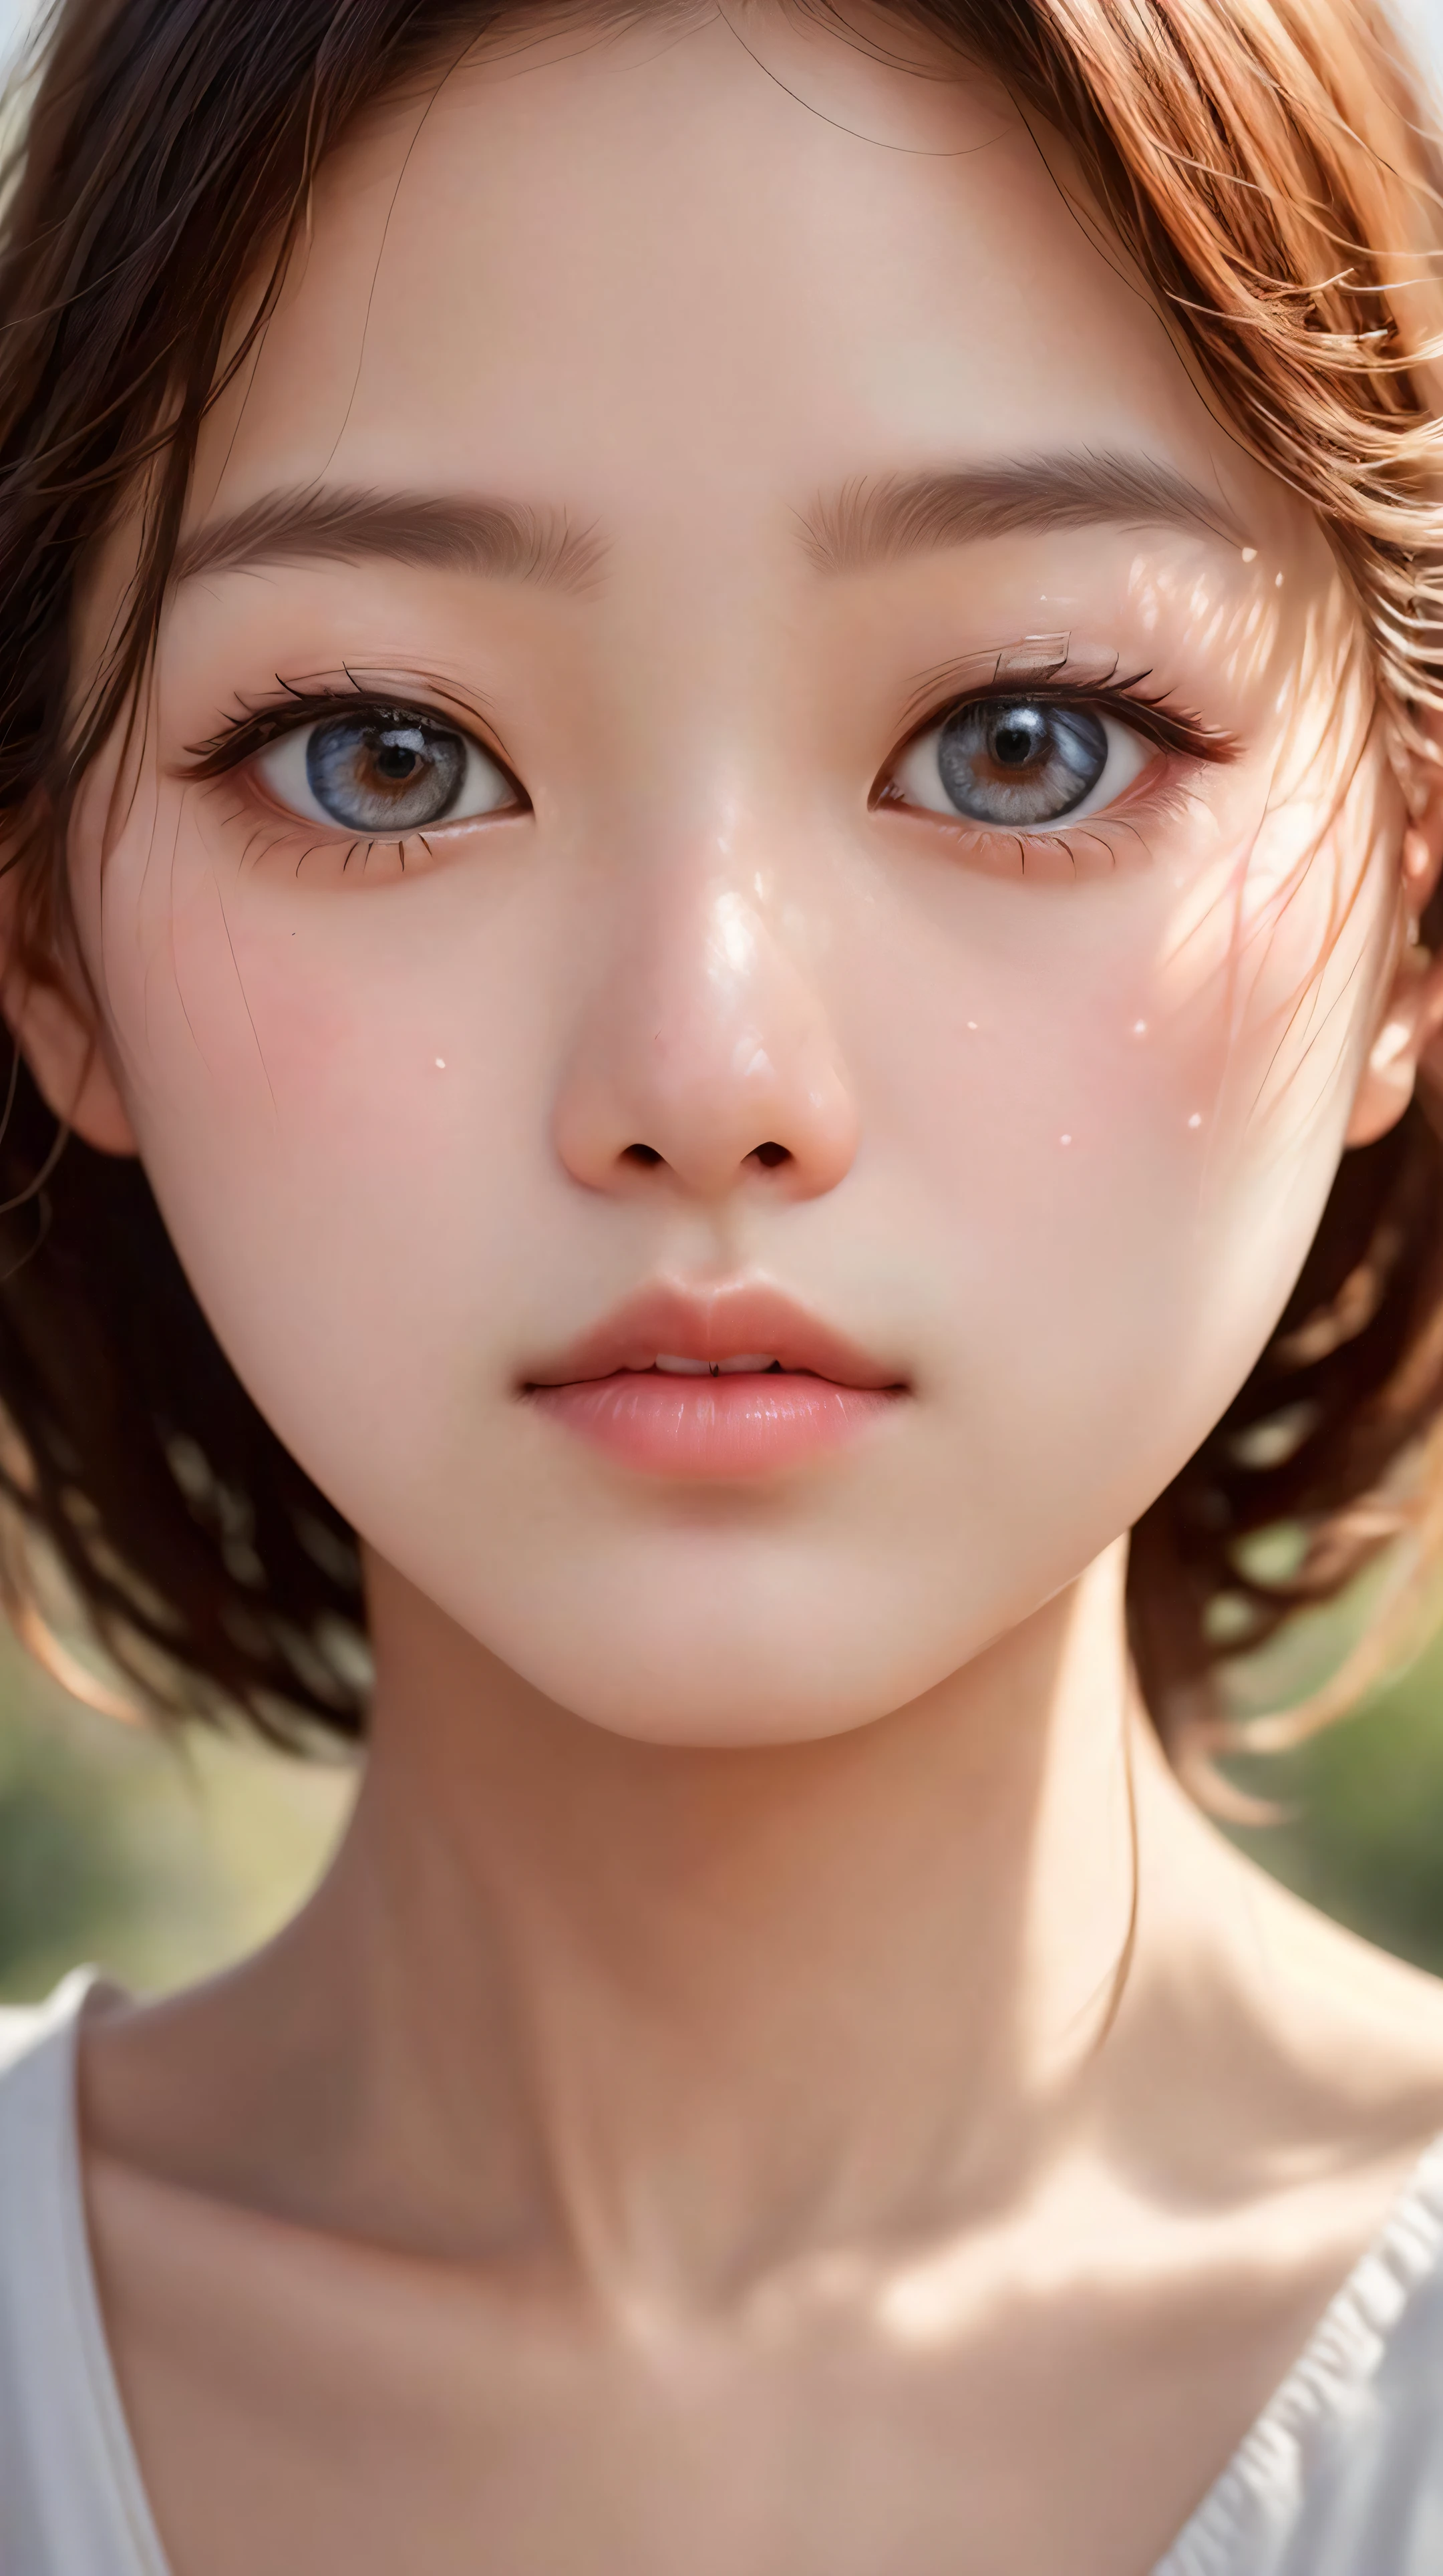 Em um hipnotizante (fechar-se:1.4), o (coreano:1.3) girl's porcelain pele glows with a delicate luminosity, enquanto seus olhos encantadores, emoldurado por cílios esvoaçantes, refletem uma profundidade de emoção que conta uma história de resiliência e força silenciosa, embodying o timeless beauty of coreano culture. melhor qualidade, Obra de arte, resolução ultra alta, (fotorrealista:1.5), Foto CRU, (afiado:1.2) foco, hdr, (detalhado_pele:1.2).